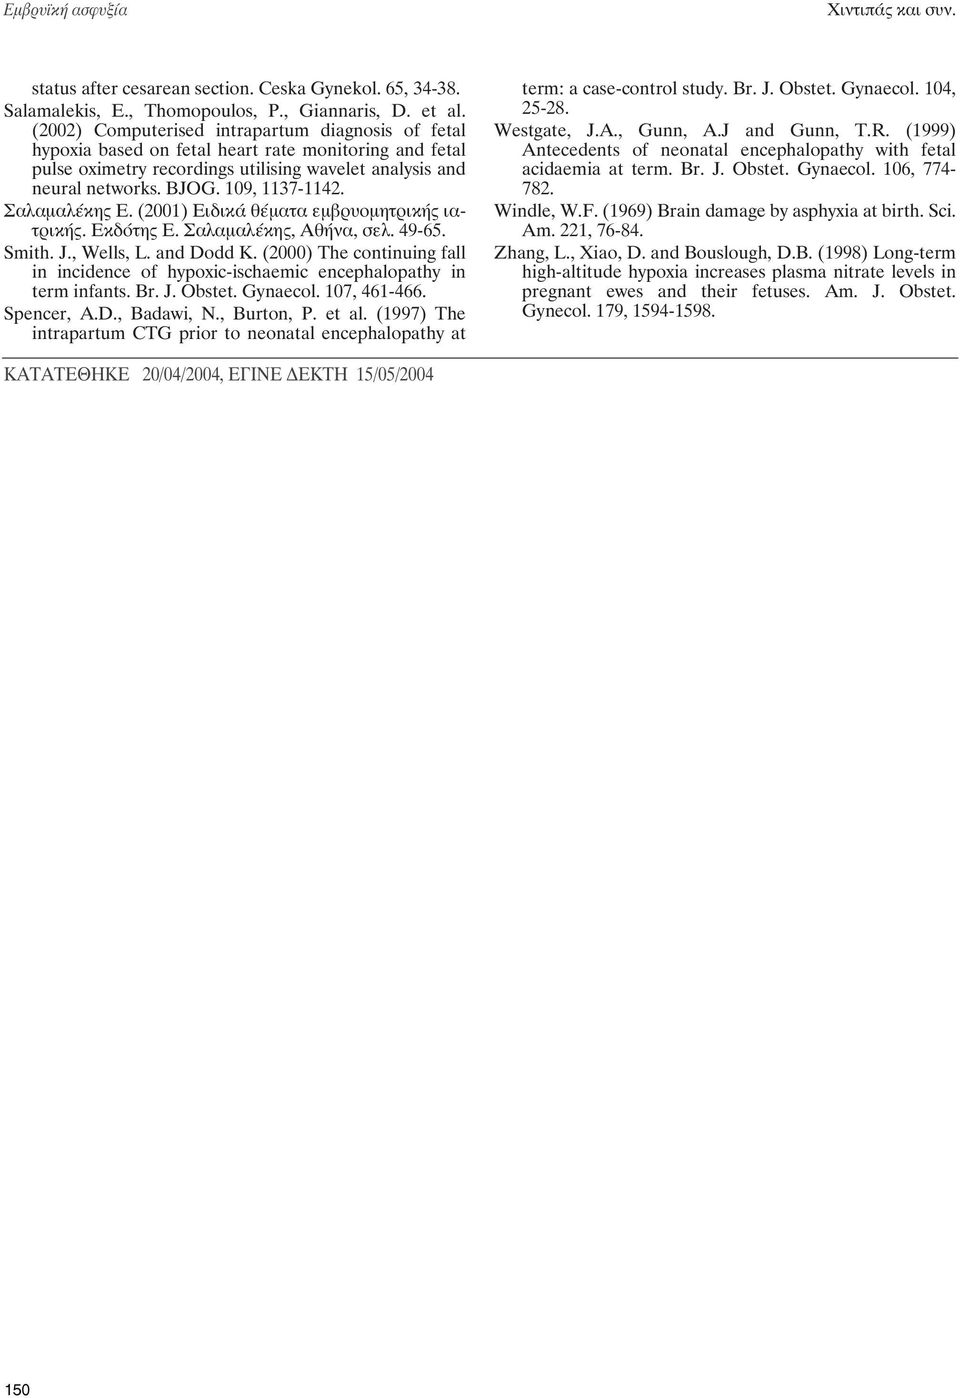 109, 1137-1142. Σαλαμαλέκης Ε. (2001) Ειδικά θέματα εμβρυομητρικής ιατρικής. Eκδότης Ε. Σαλαμαλέκης, Αθήνα, σελ. 49-65. Smith. J., Wells, L. and Dodd K.